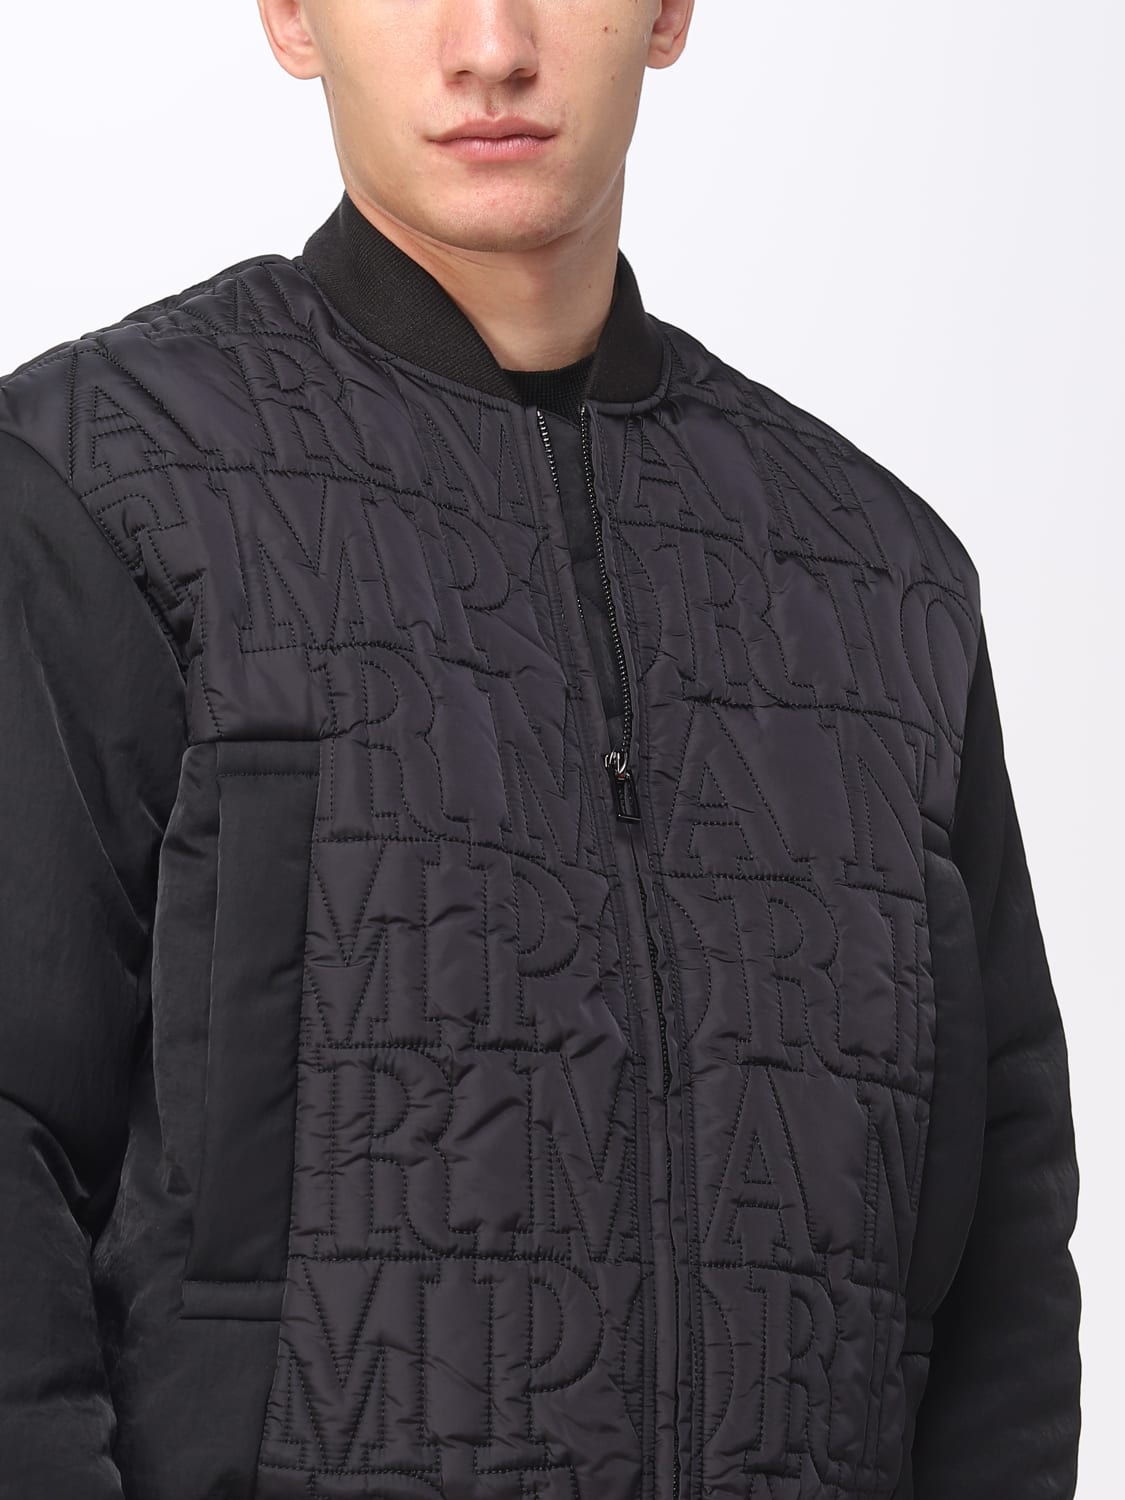 Buy EMPORIO ARMANI Regular Fit Leather Bomber Jacket, Black Color Men